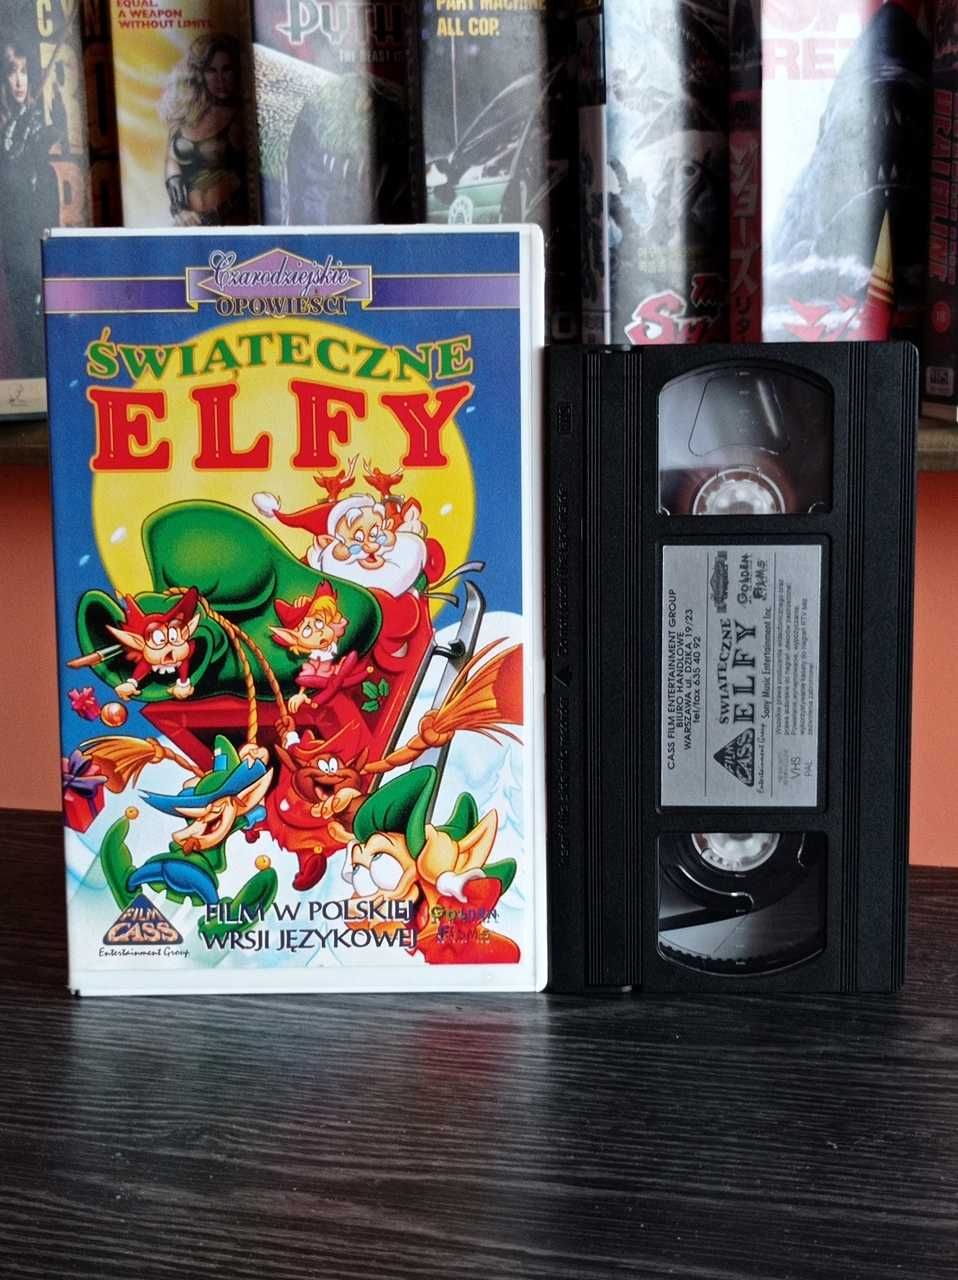 ŚWIĄTECZNE ELFY (1995) dubbing VHS